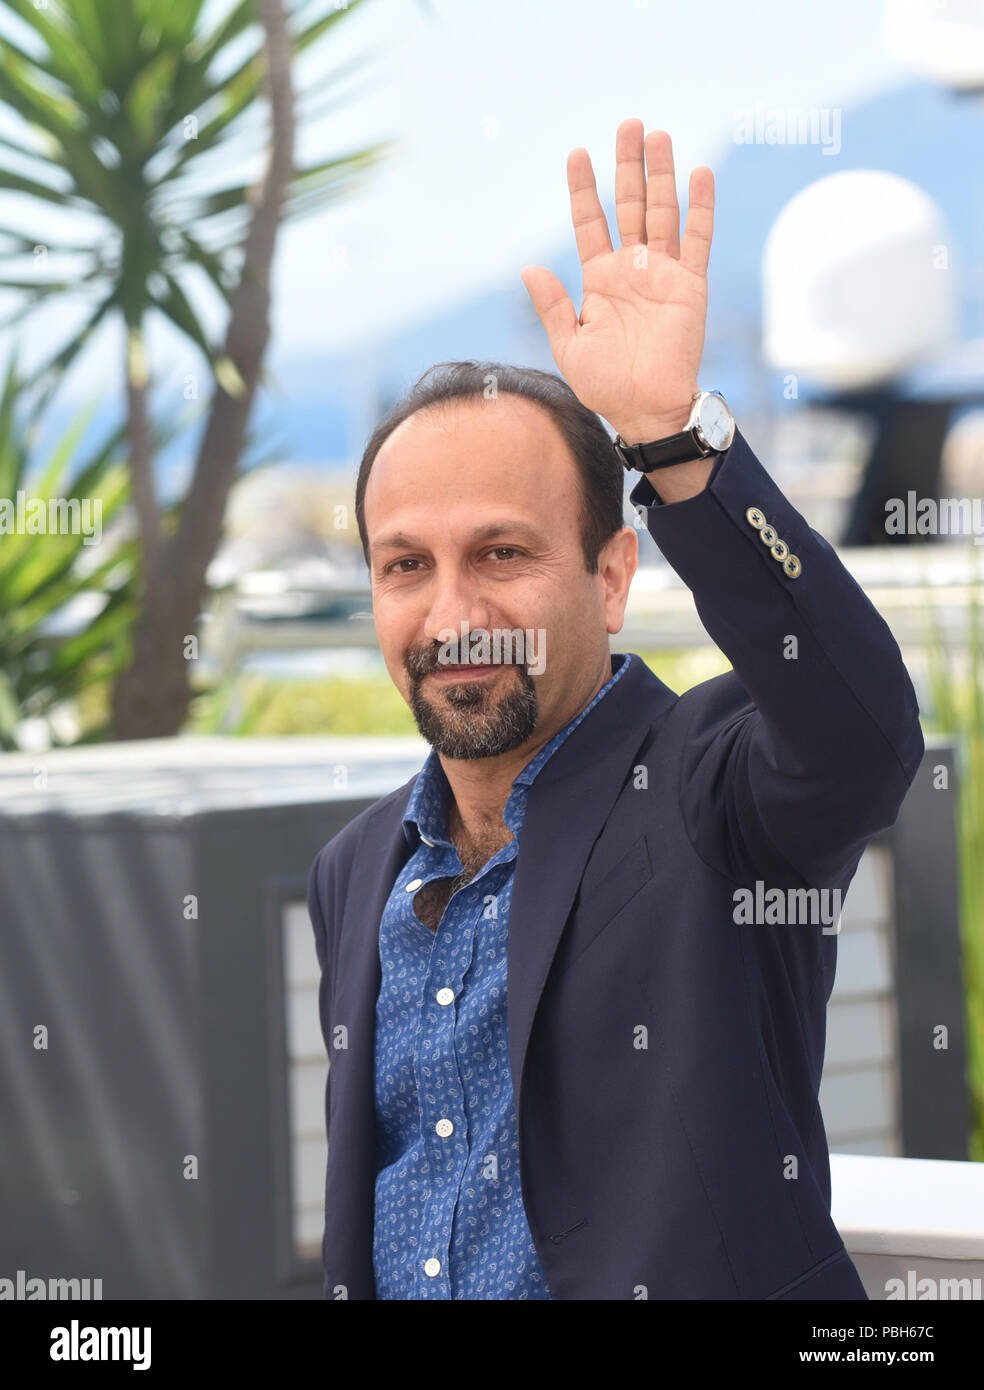 Mai 21, 2016 - Cannes, Frankreich: Ashgar Farhadi besucht die 'Verkäufer' Fotoshooting während des 69. Filmfestival in Cannes. Ashgar Farhadi lors du 69eme Festival de Cannes. *** Frankreich/KEINE VERKÄUFE IN DEN FRANZÖSISCHEN MEDIEN *** Stockfoto